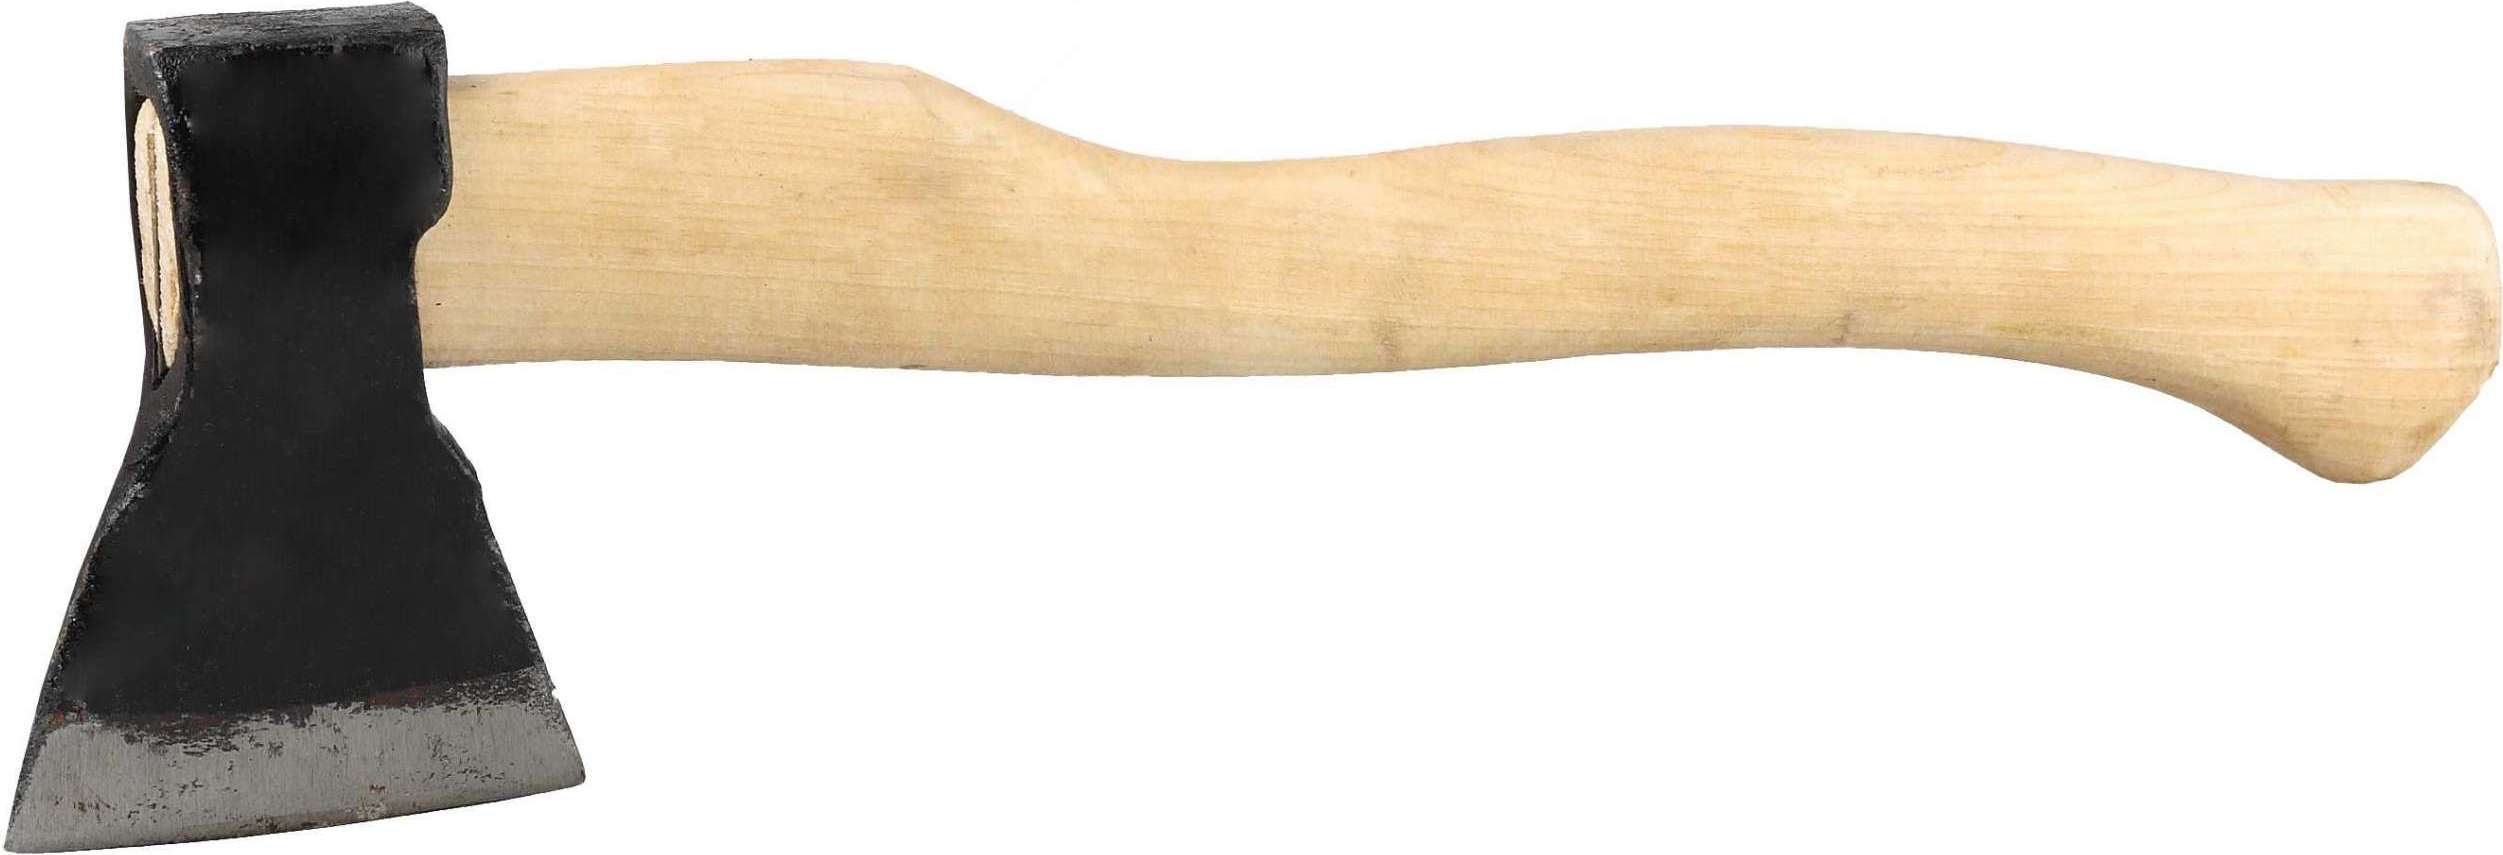 Купить Топор универсальный 600 г деревянная рукоять